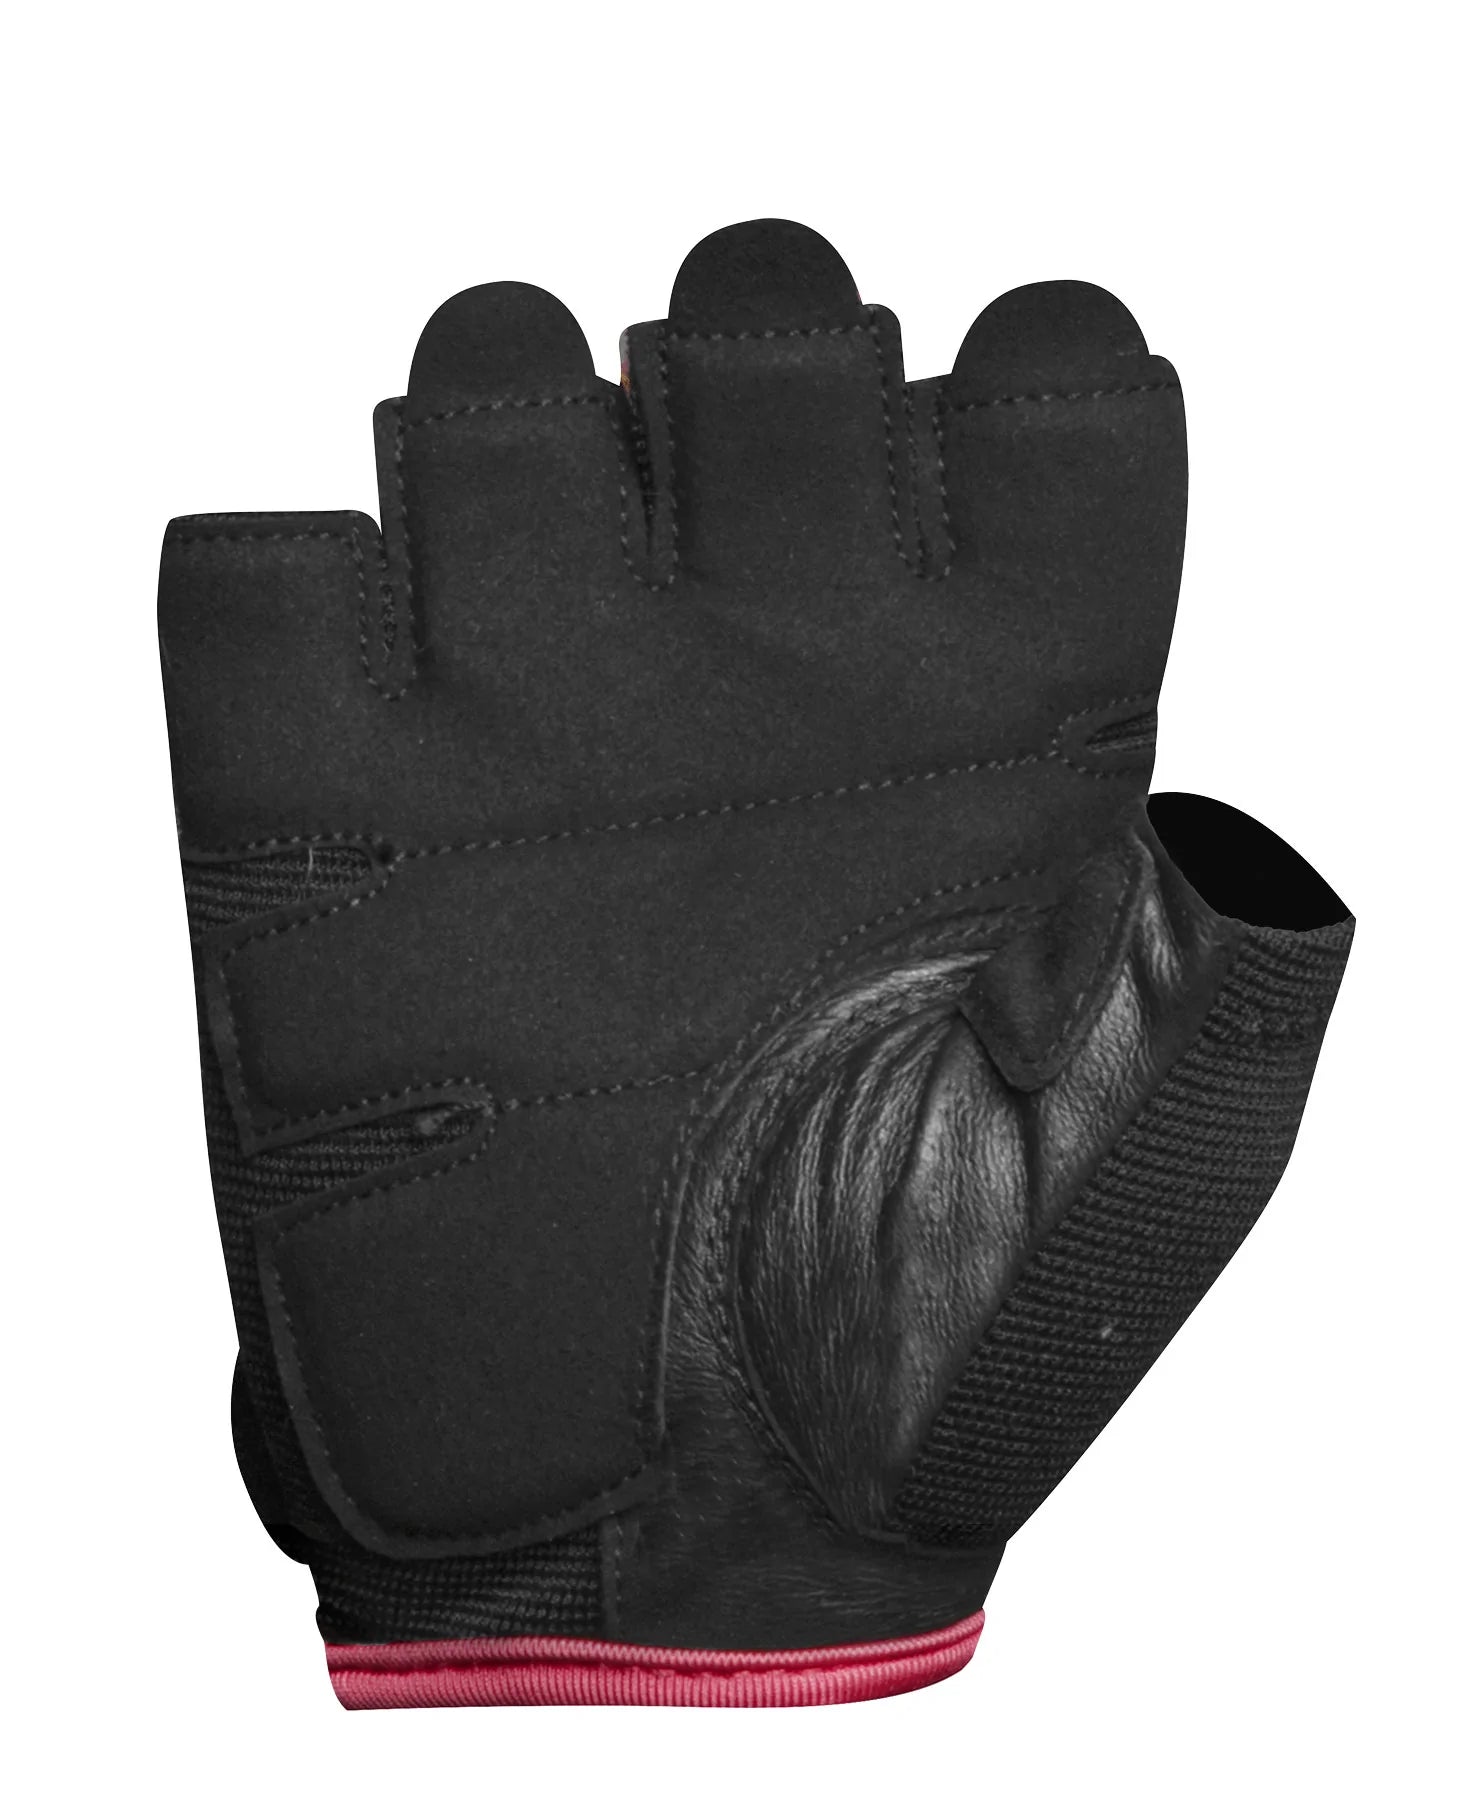 Lifttech Women's Classic Lifting Gloves